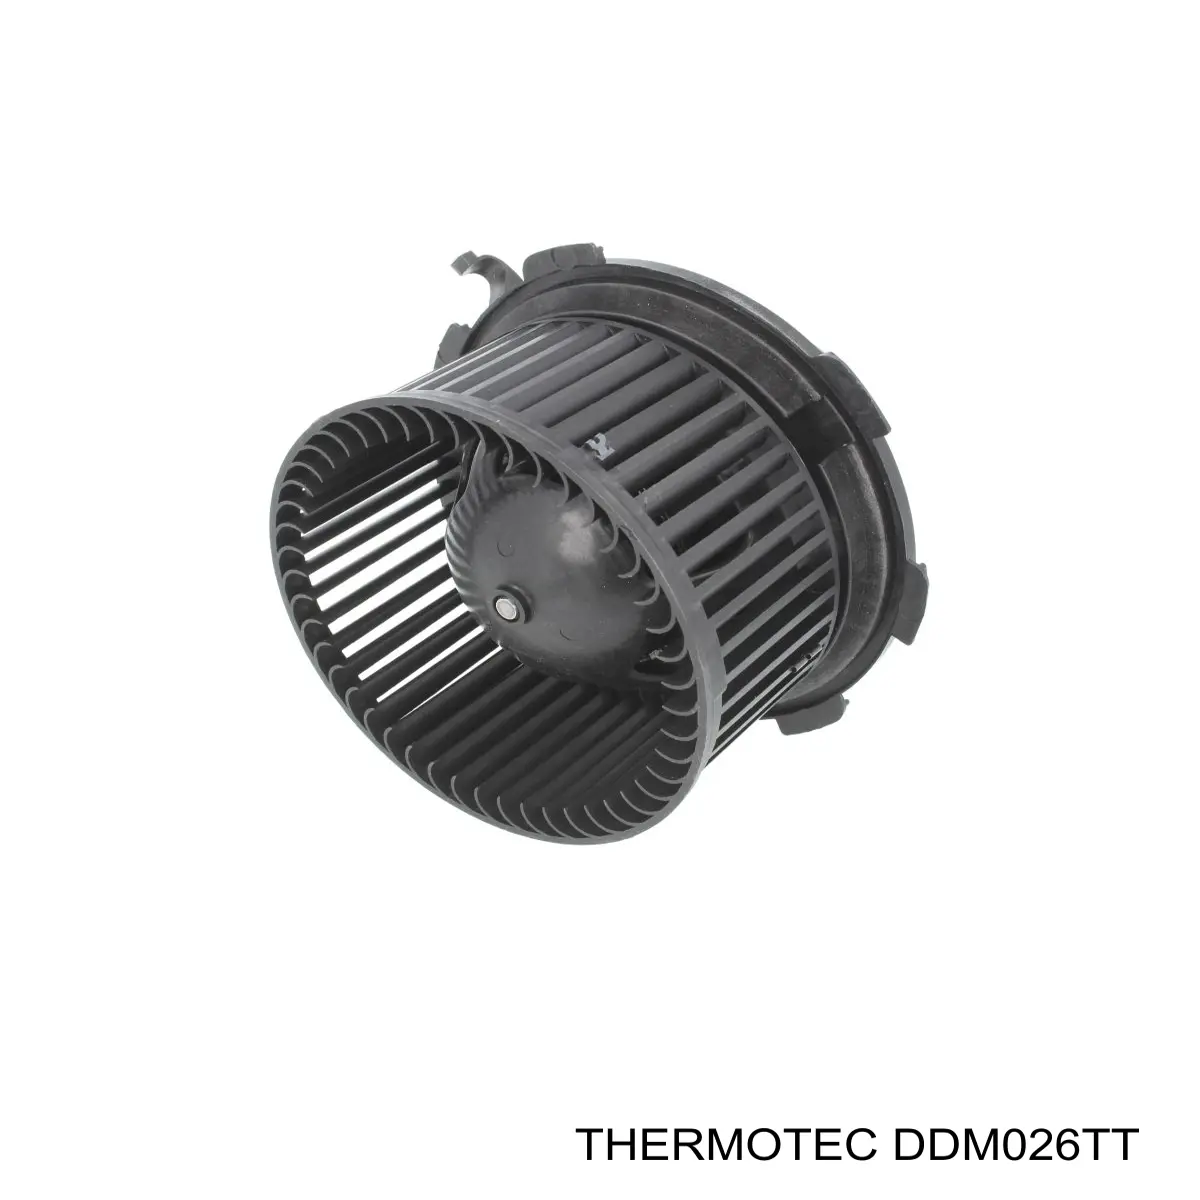 DDM026TT Thermotec motor eléctrico, ventilador habitáculo